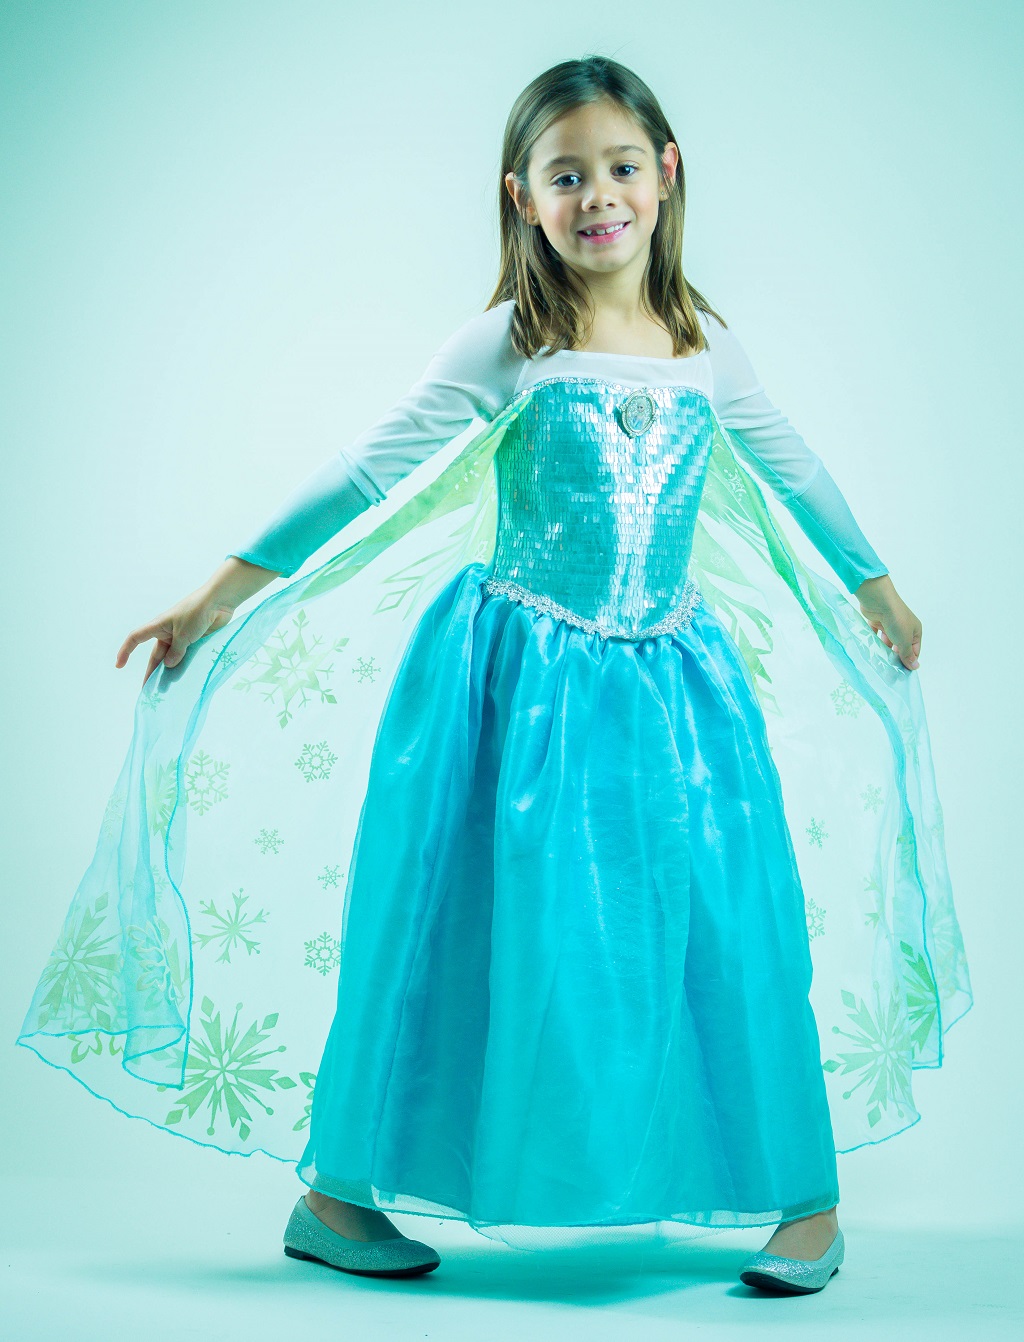 Frozen: Princess Elsa Portrait